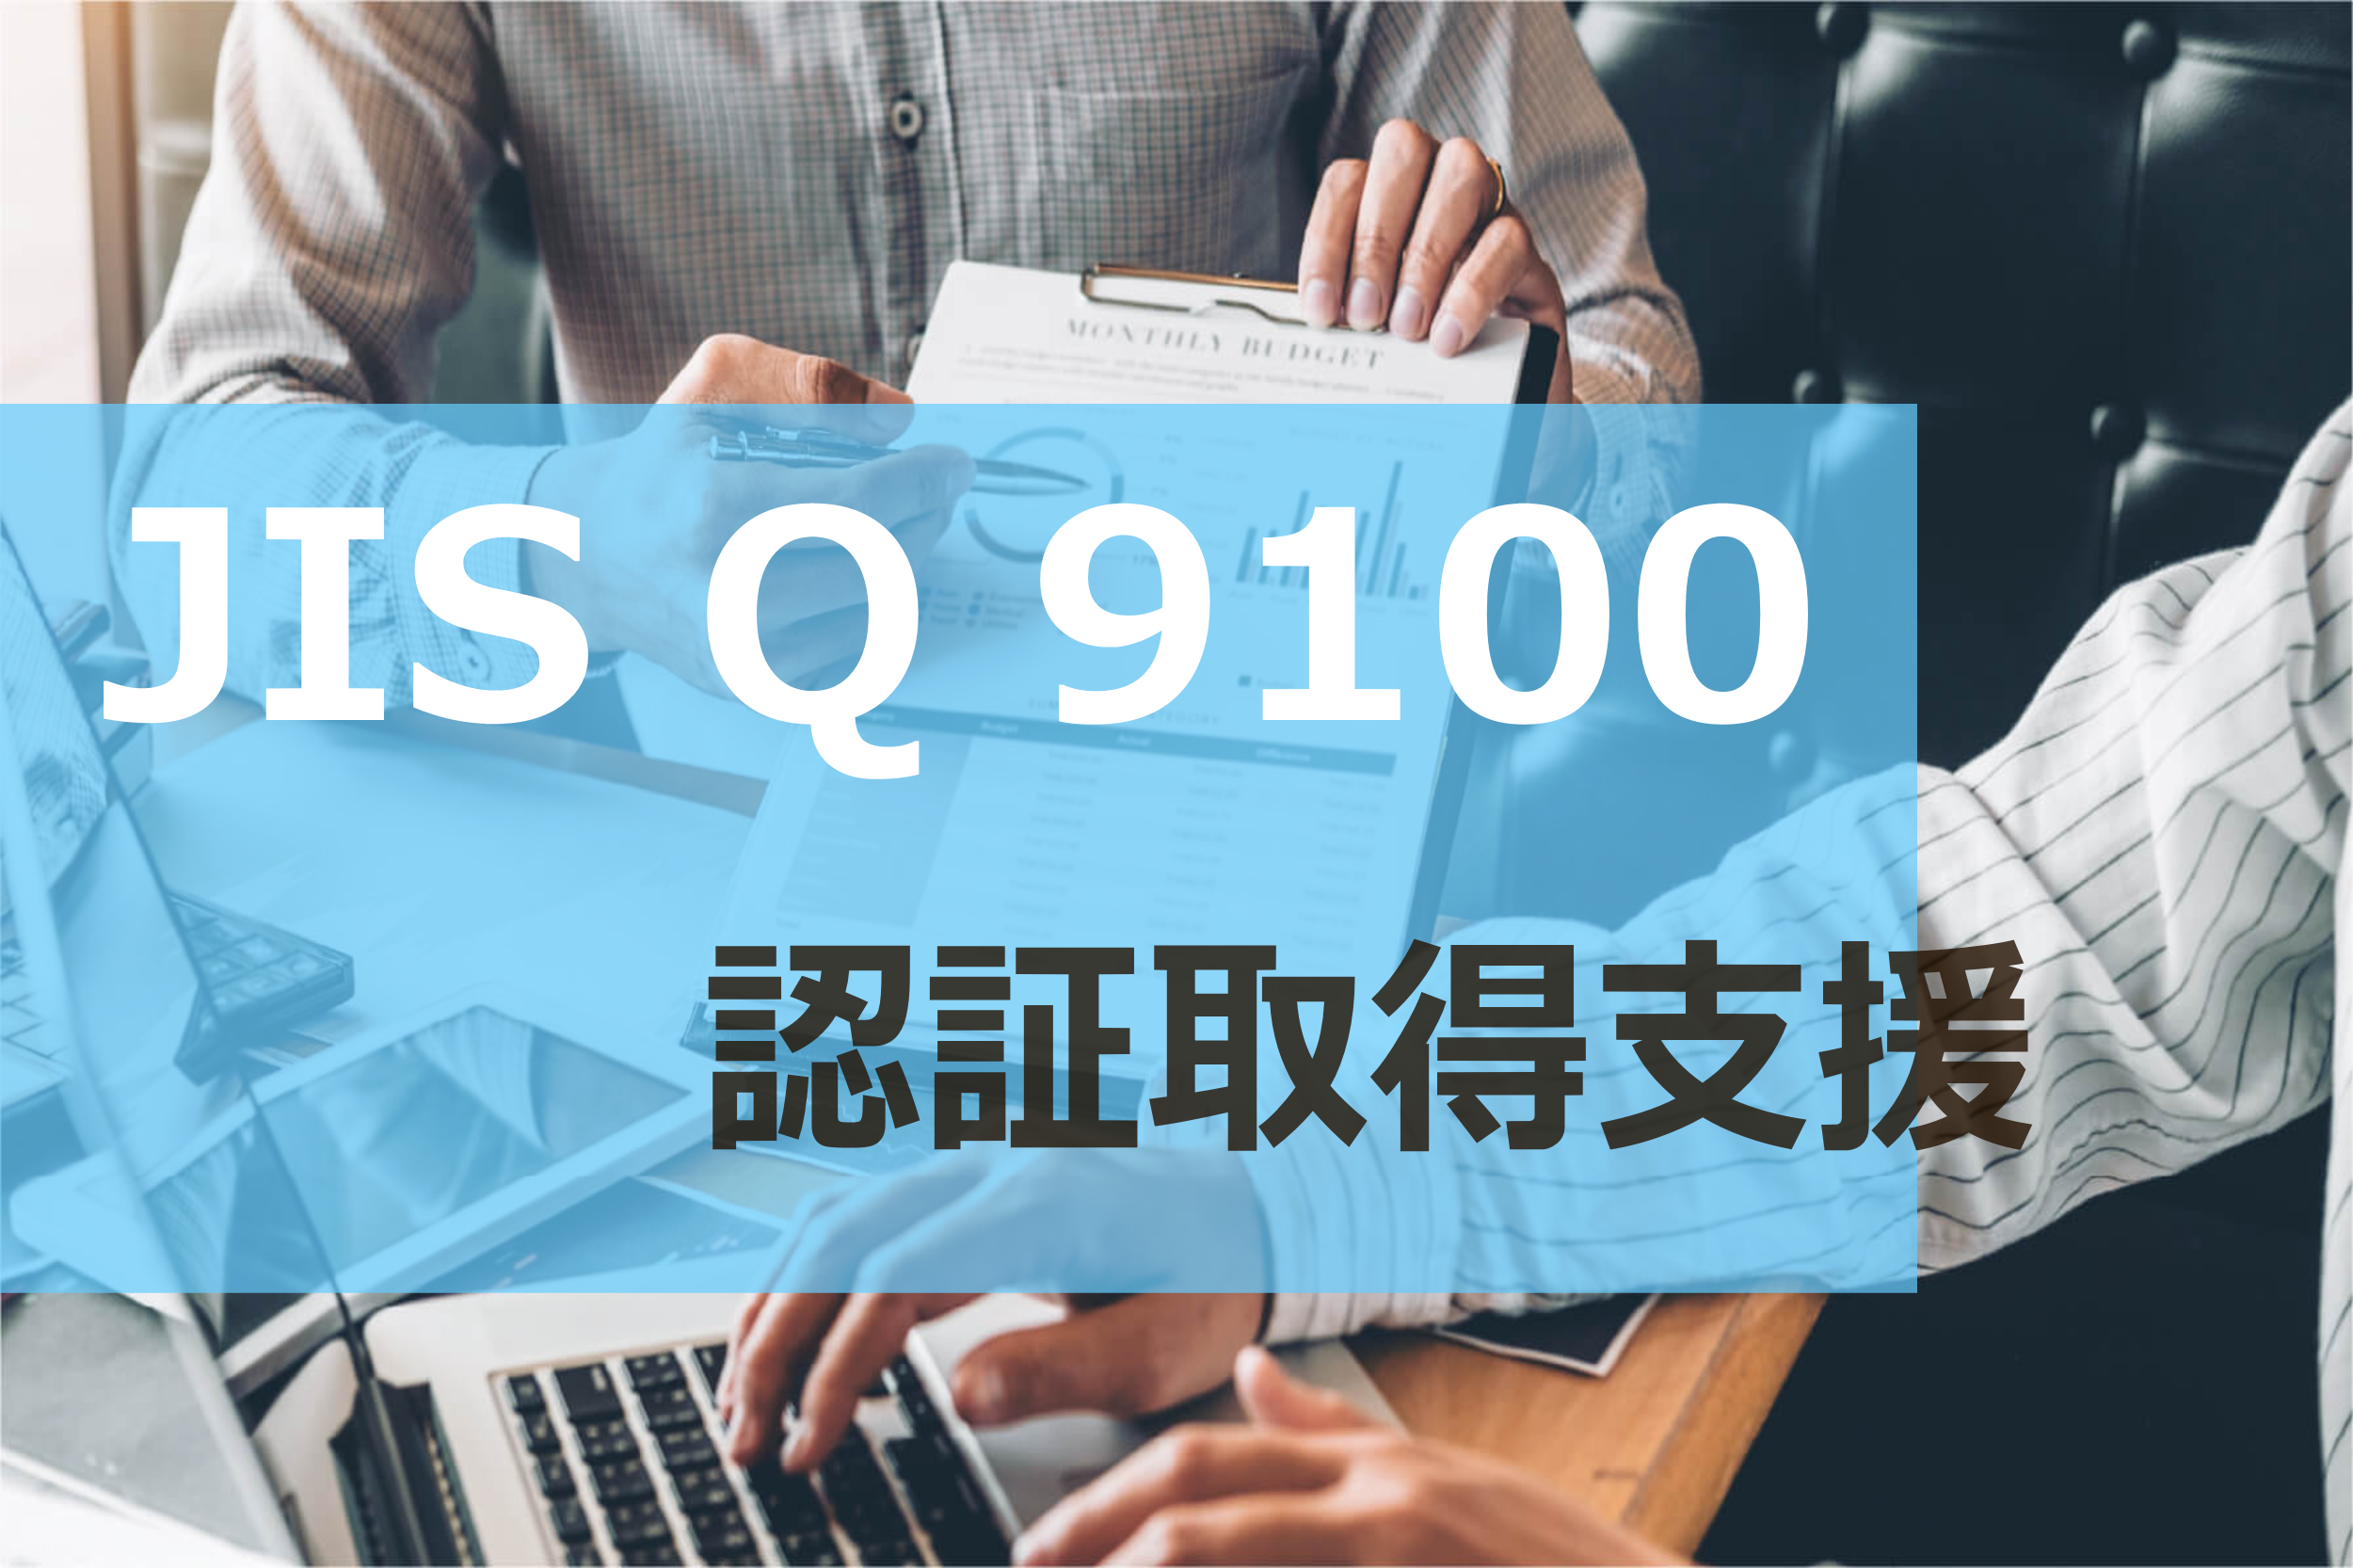 JIS Q 9100：2016 規格解説セミナー